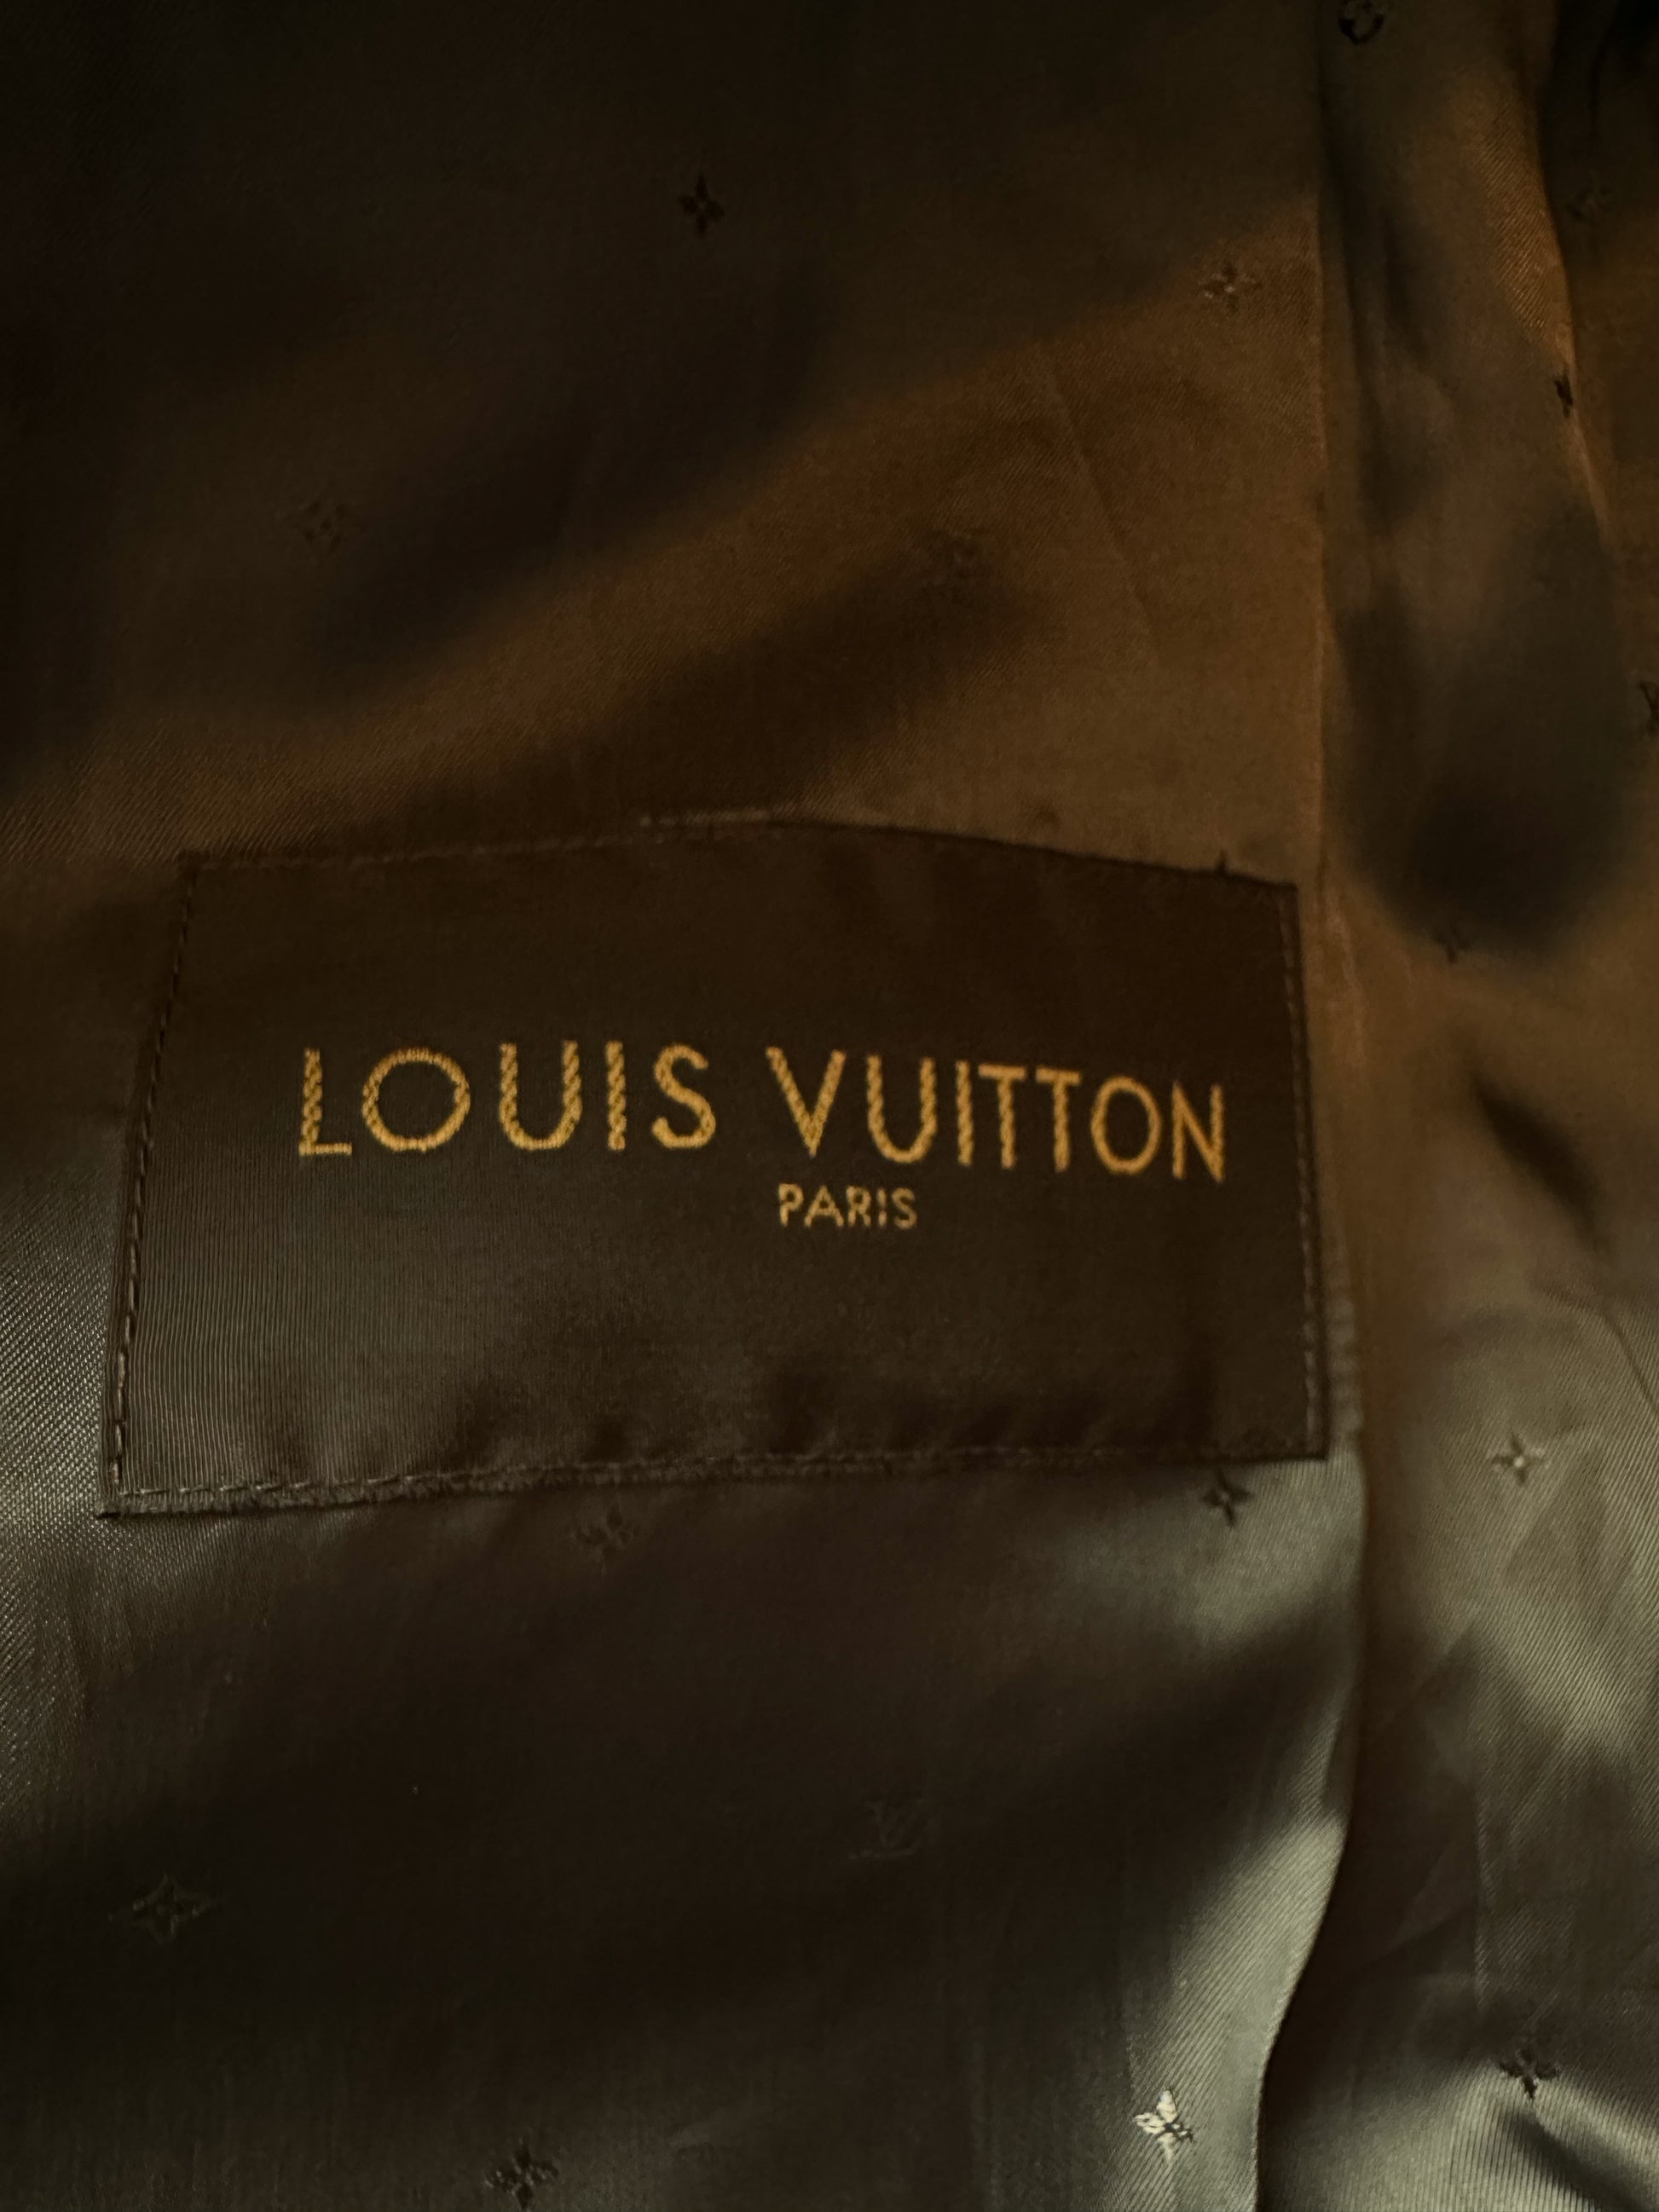 Louis Vuitton Supreme Red Jacket Price